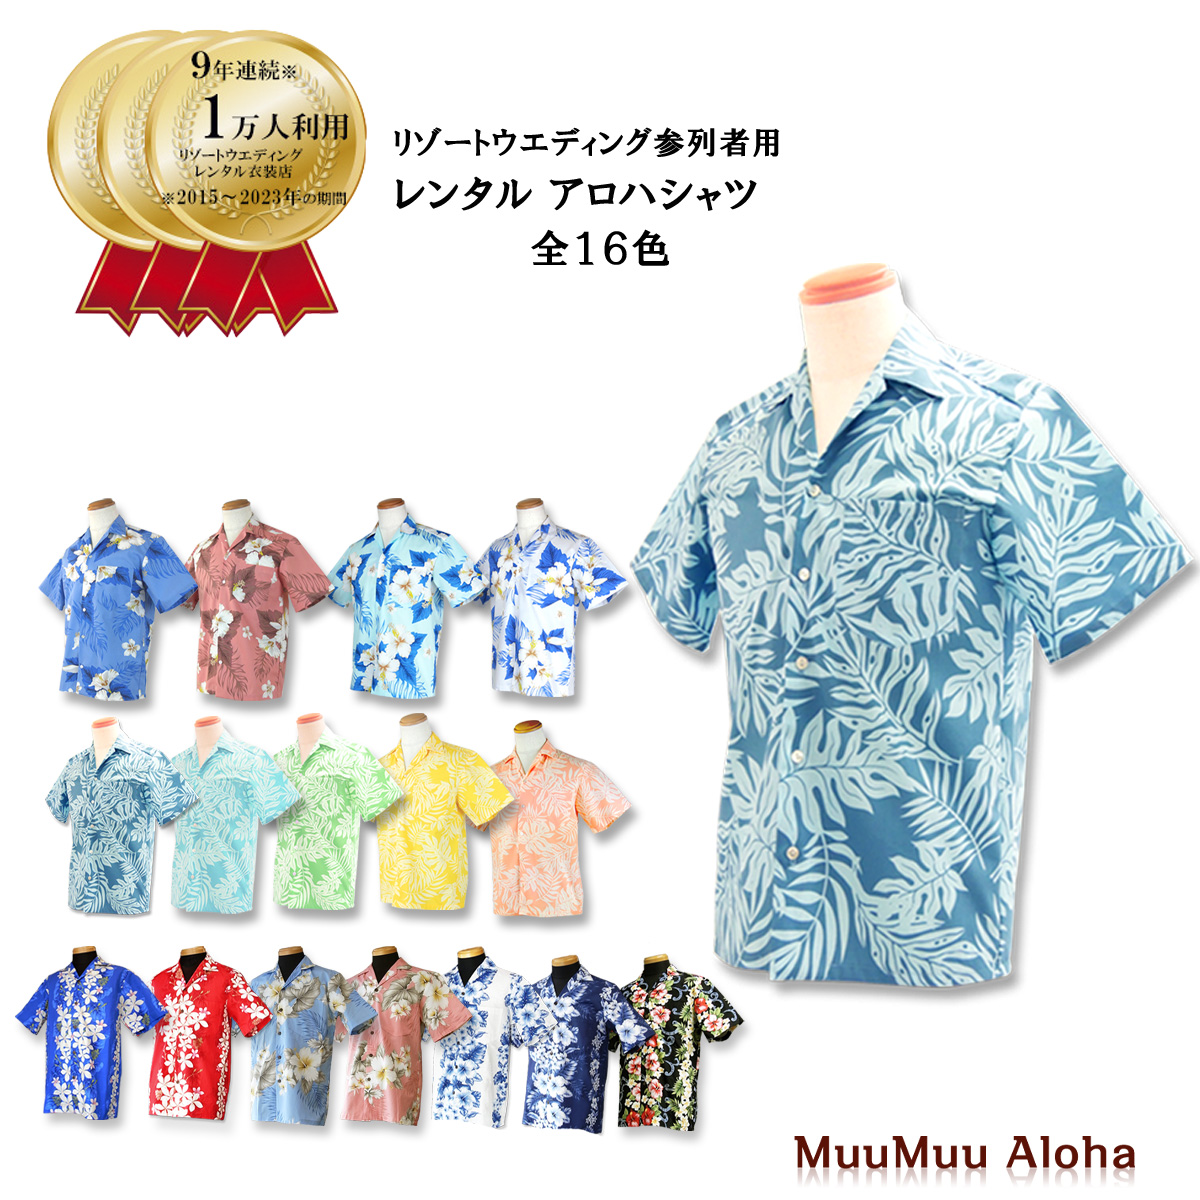  гавайская рубашка мужской свадьба TypeA ( все 16 цвет ).... одежда [ в аренду товар ]